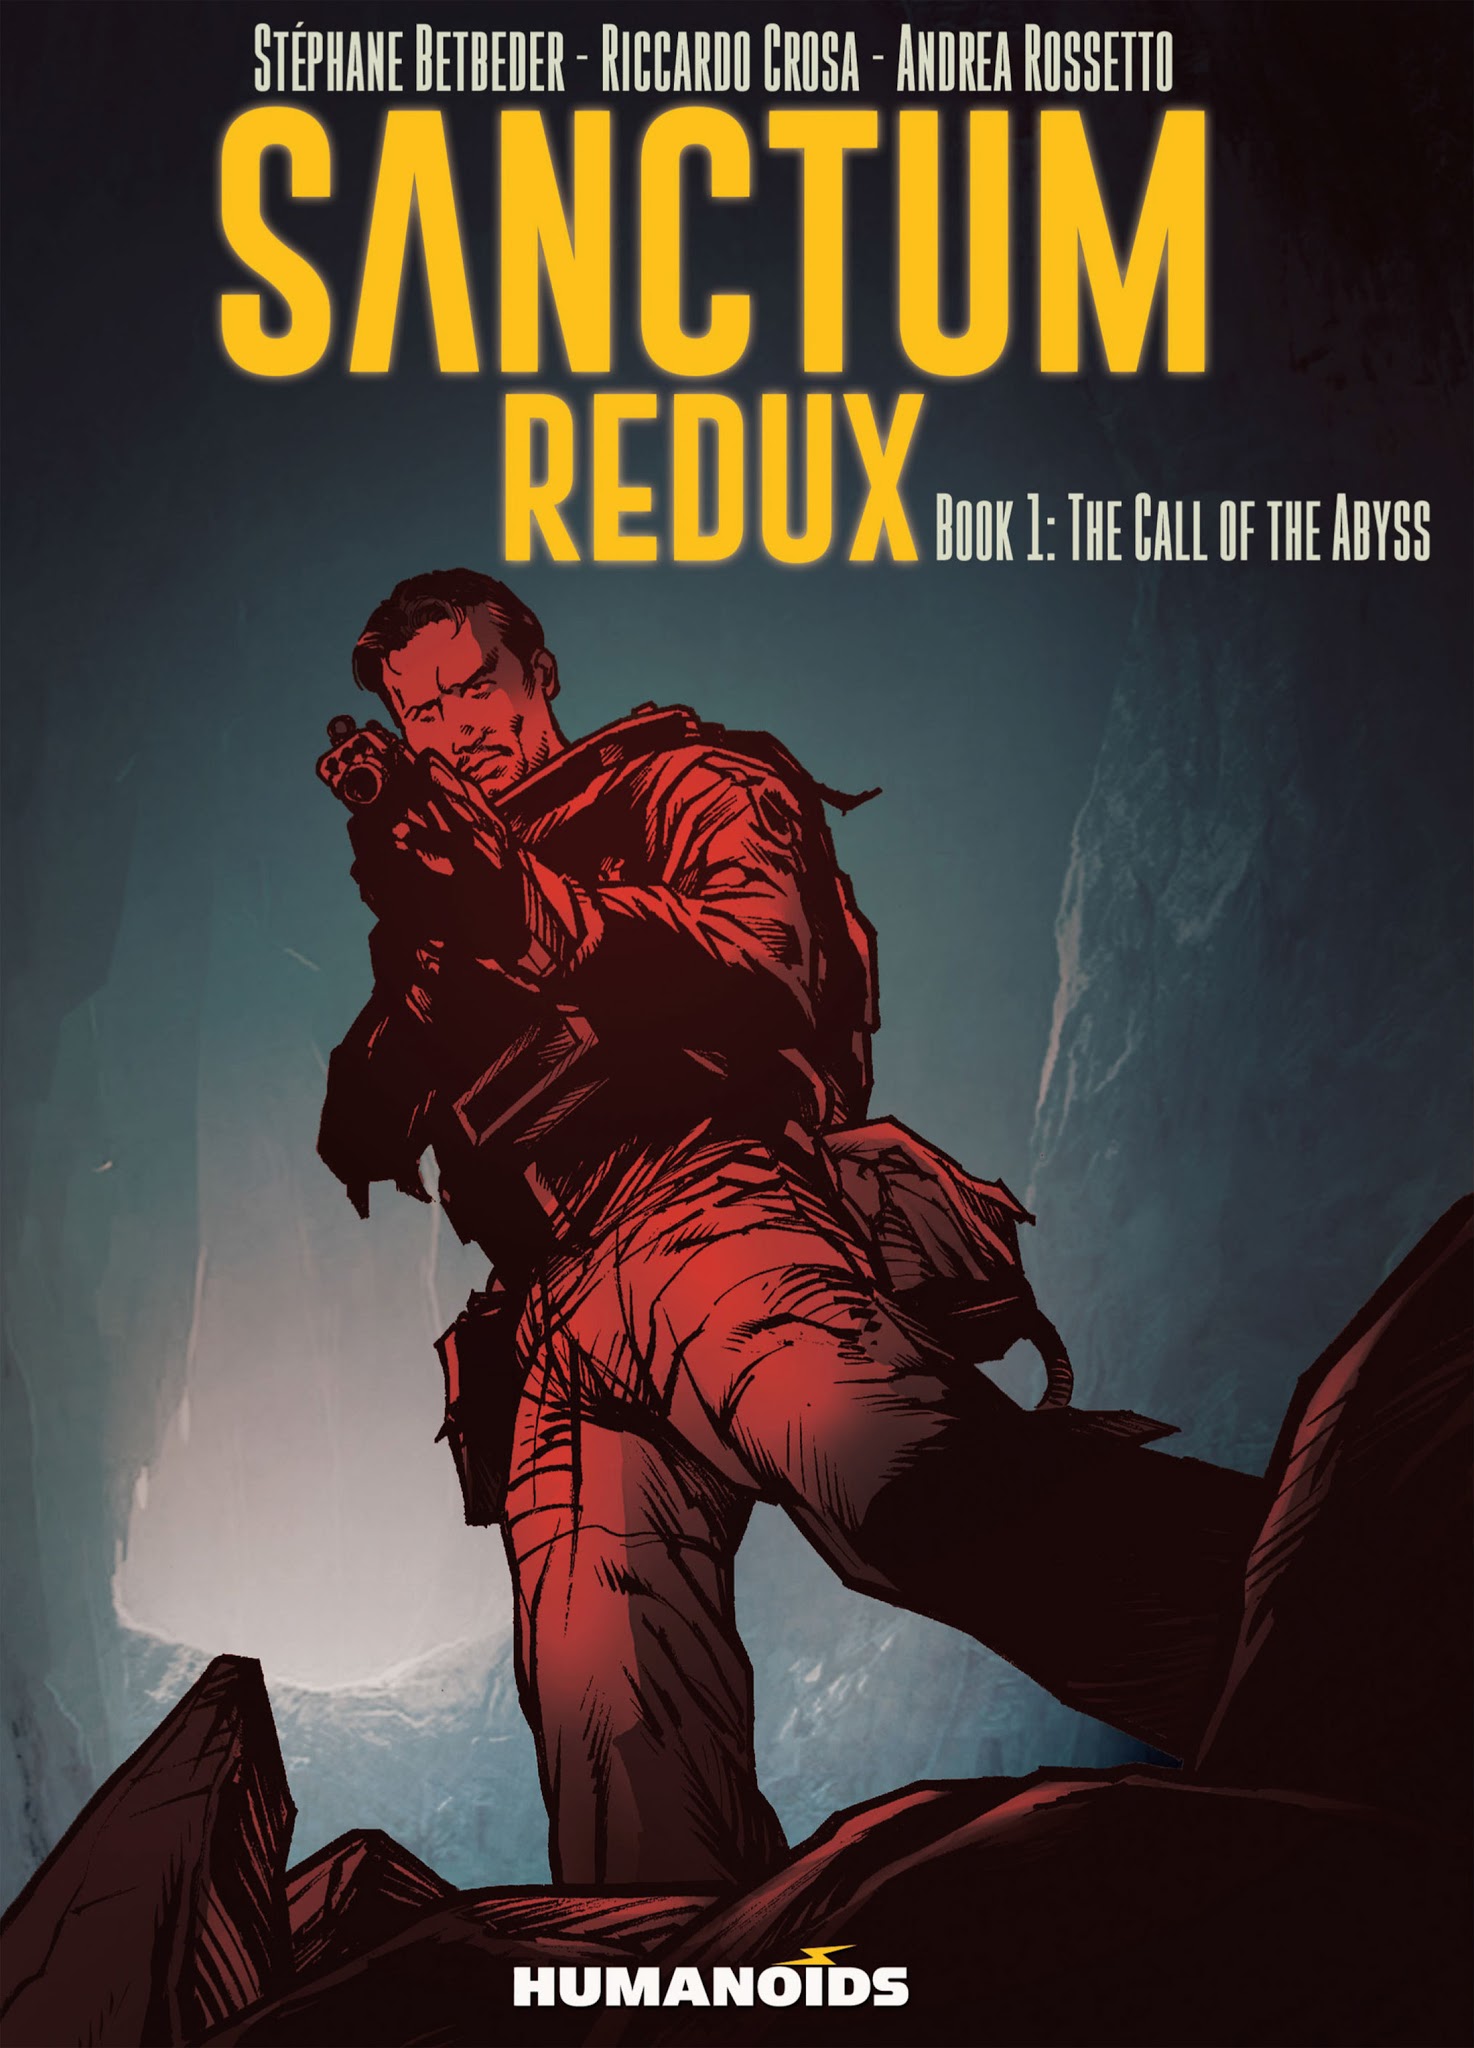 Read online Sanctum Redux comic -  Issue #1 - 1